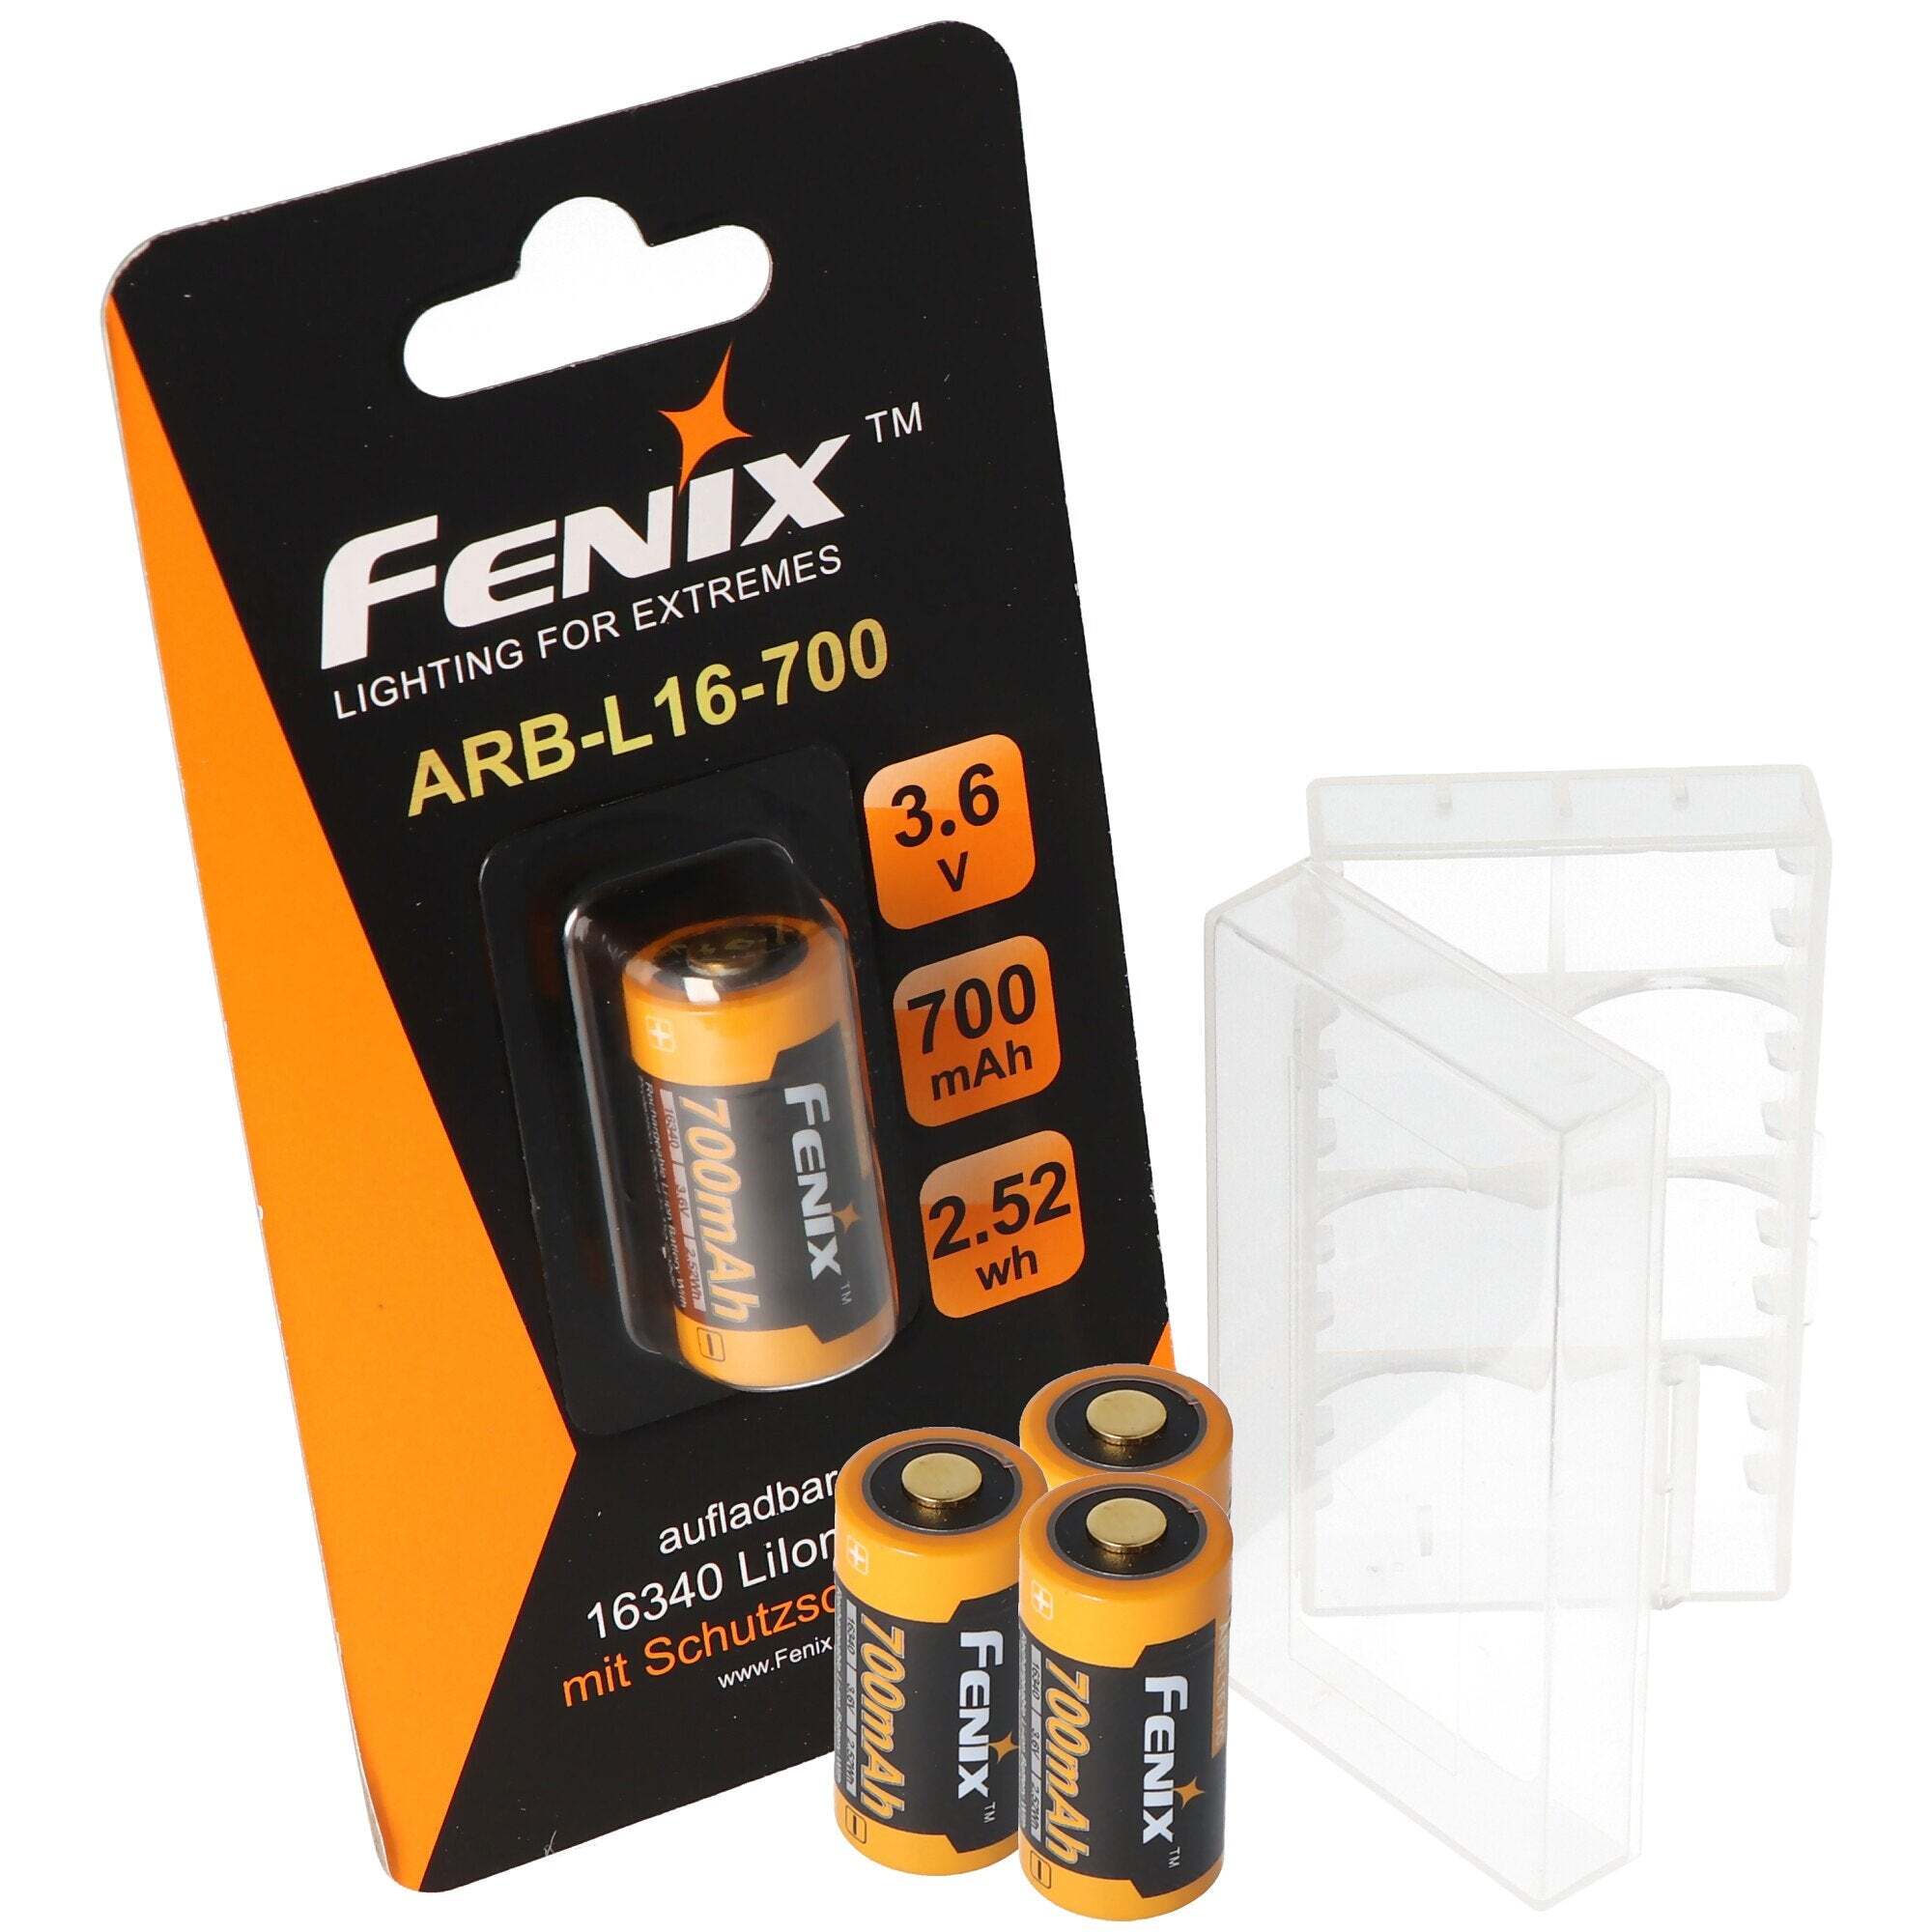 Fenix 4x CR123 Een Li-ionbatterij met 3,7 volt, min. 700 mAh, meestal 760 mAh, max. 820 mAh capaciteit inc